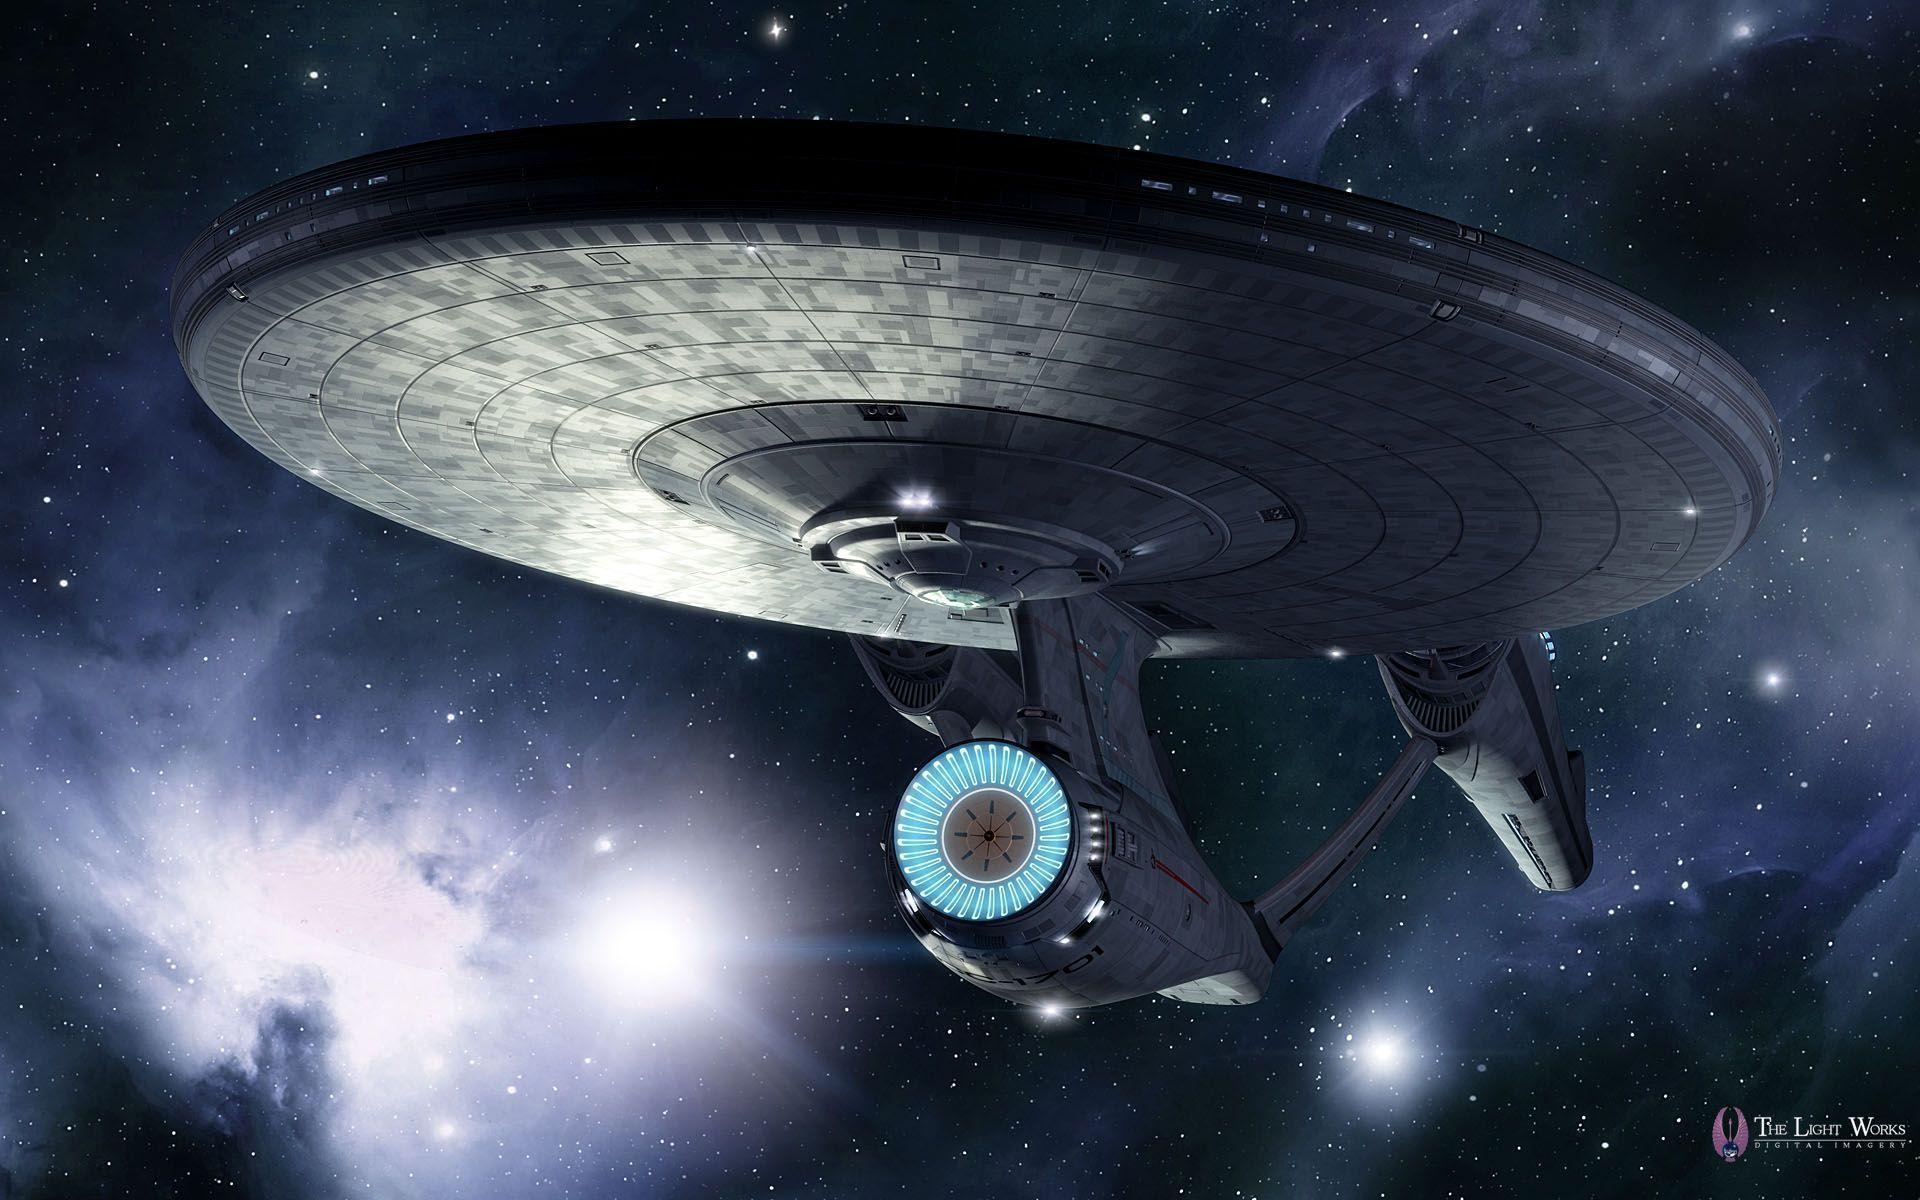 Uss Enterprise Star Trek Ship Wallpaper